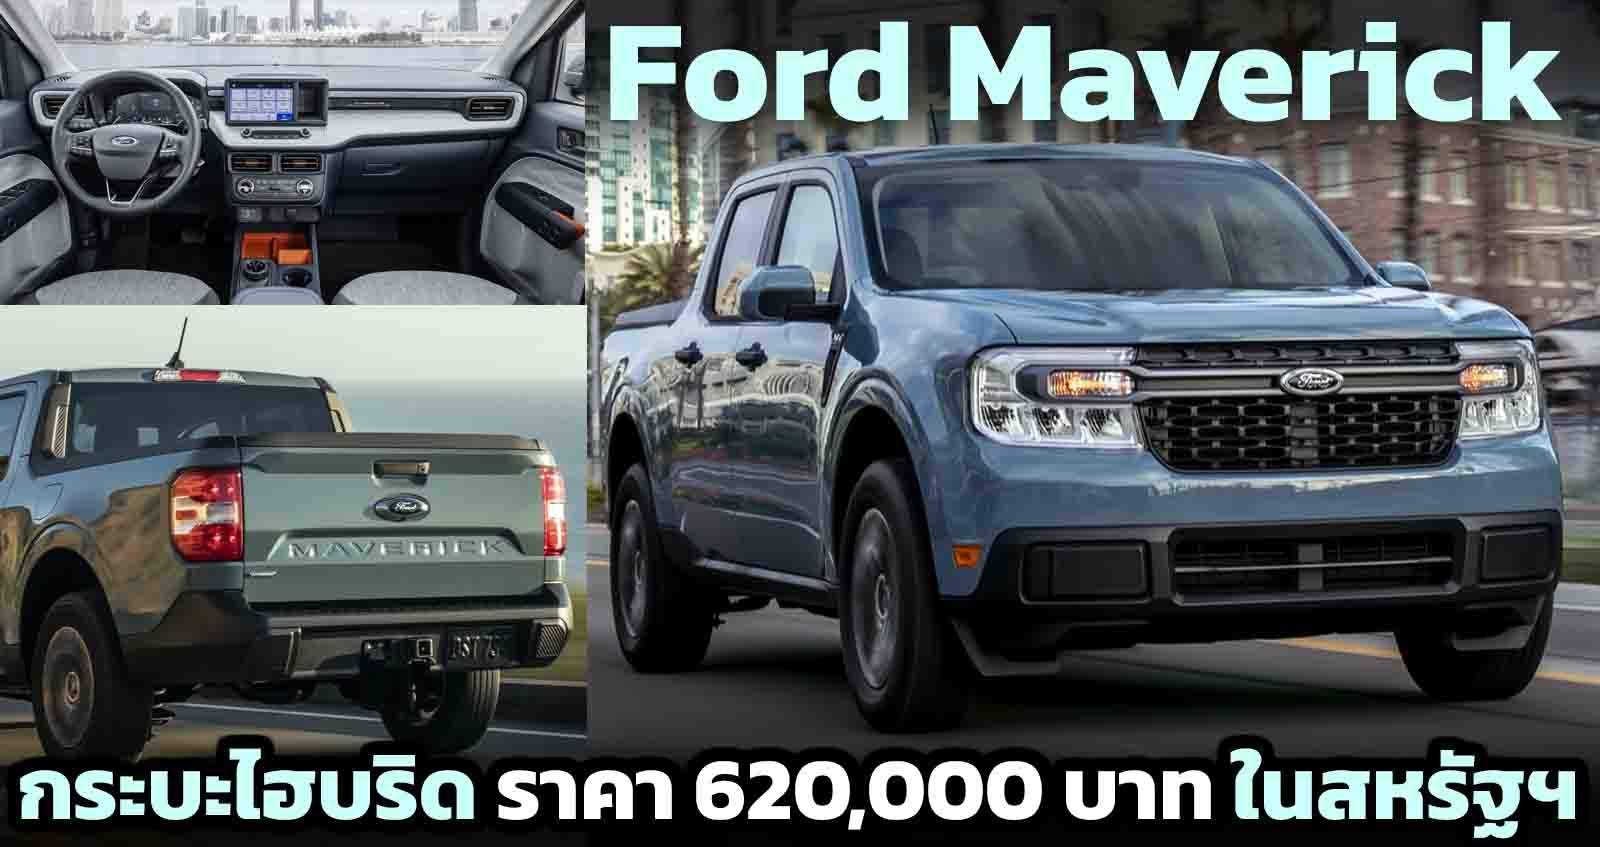 เปิดตัว Ford Maverick กระบะไฮบริด ราคา 620,000 บาท ในสหรัฐฯ